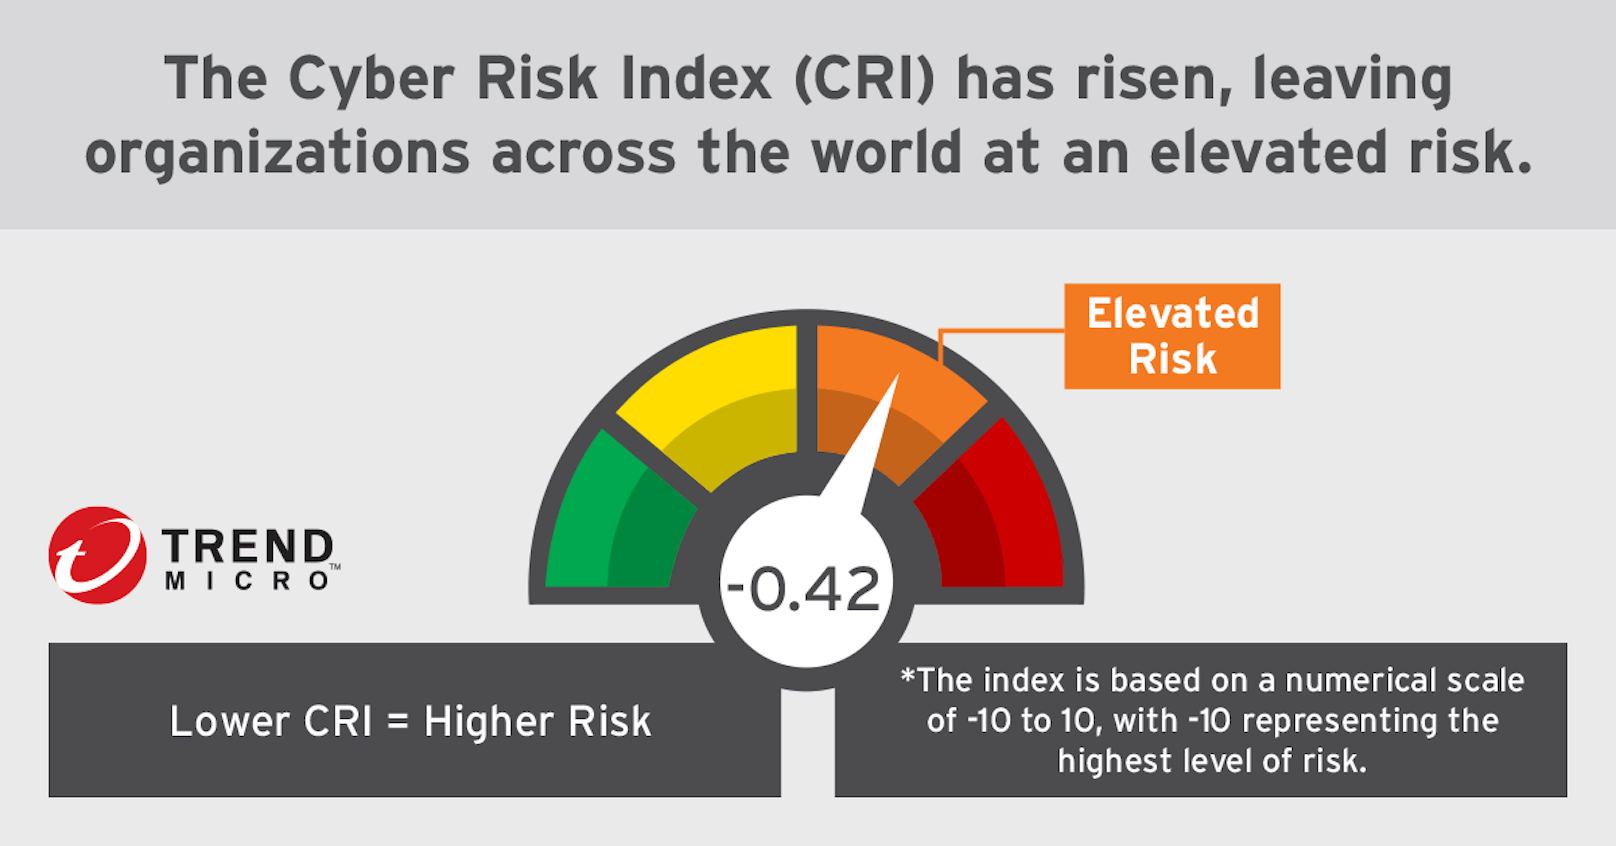 Den vollständigen Cyber Risk Index finden Sie hier in englischer Sprache.